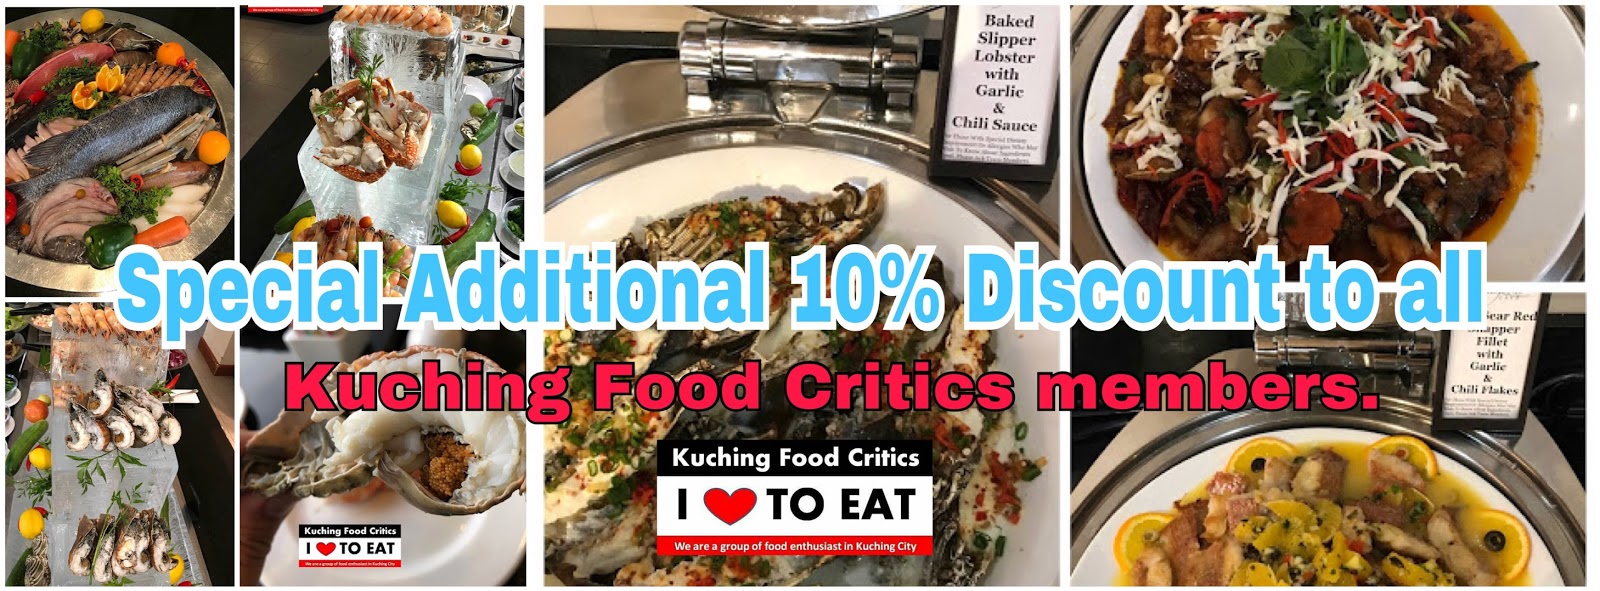 Kuching Food Critics: HILTON Kuching Seafood Buffet - PROMO